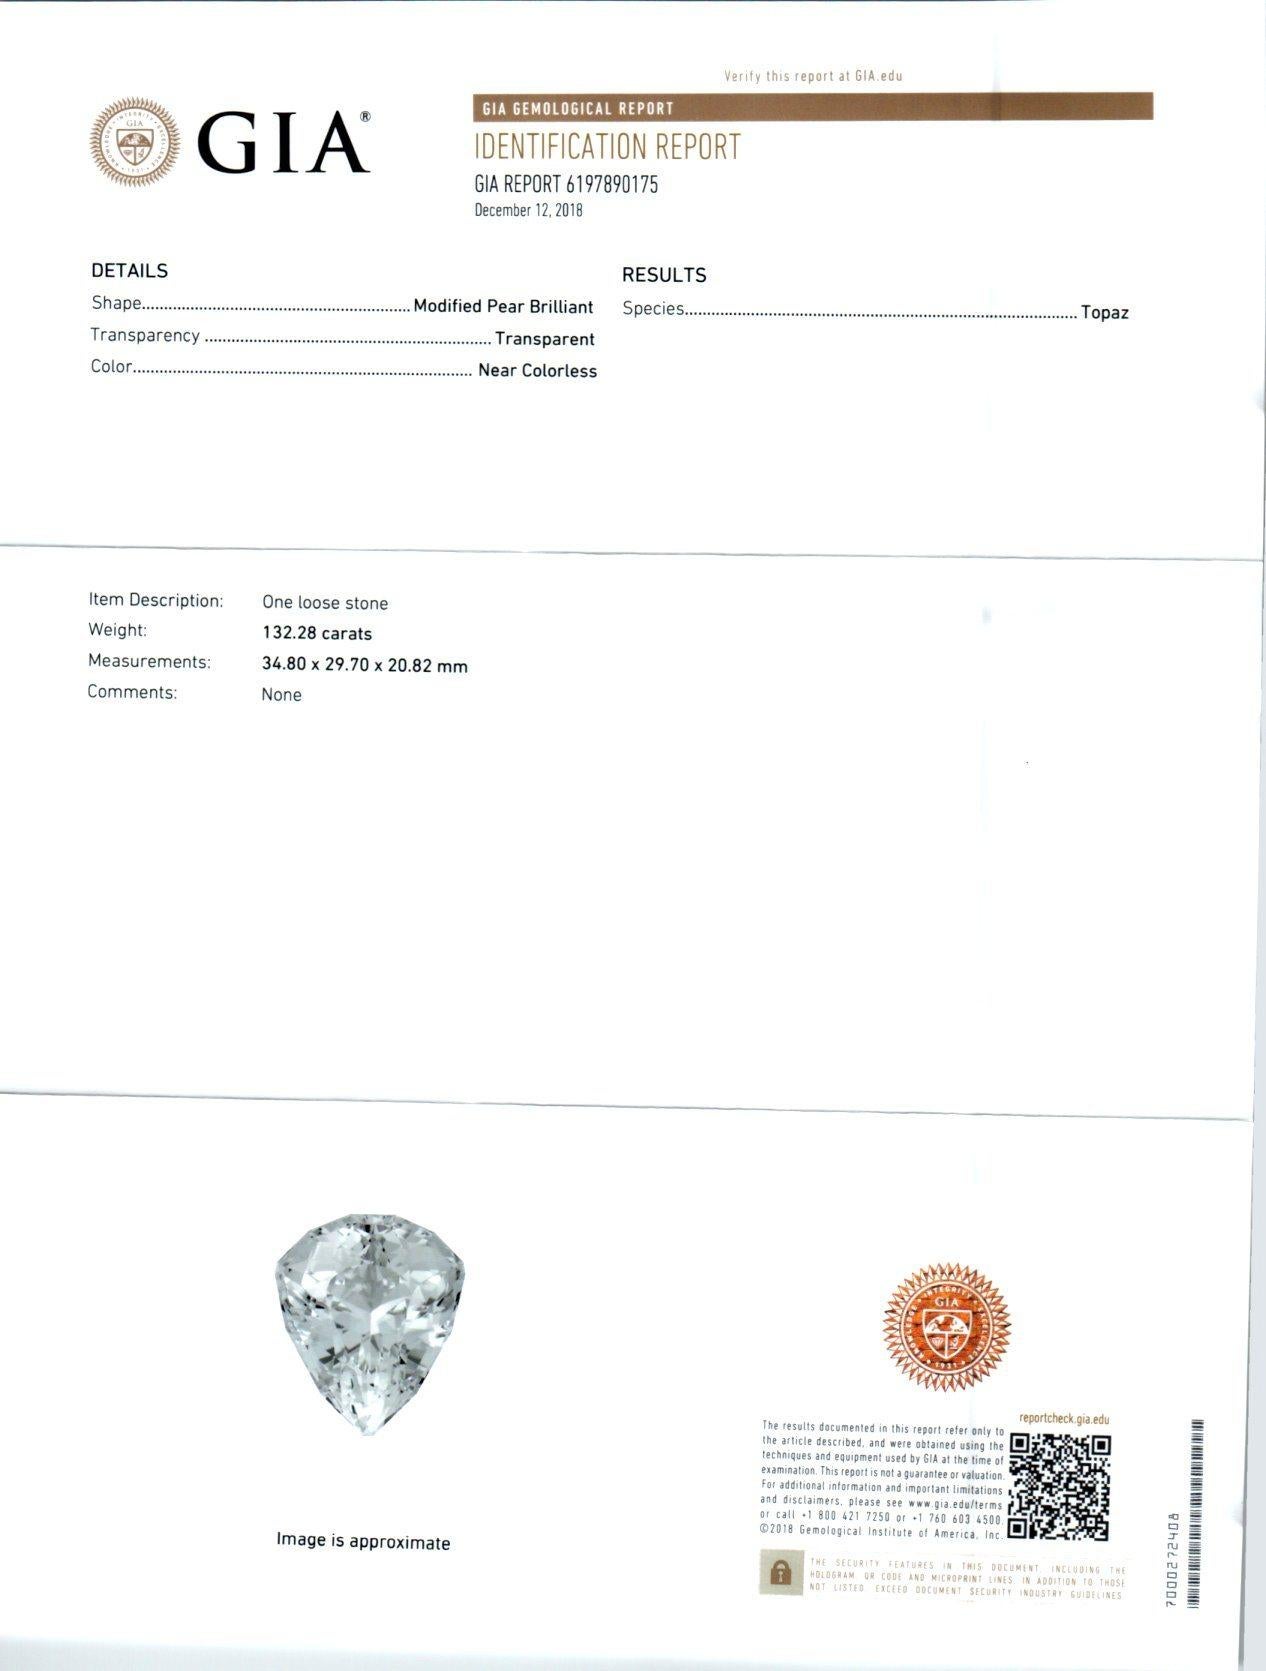 GIA Certified 133.28 Carat Topaz Diamond Yellow White Gold Pendant Necklace 3